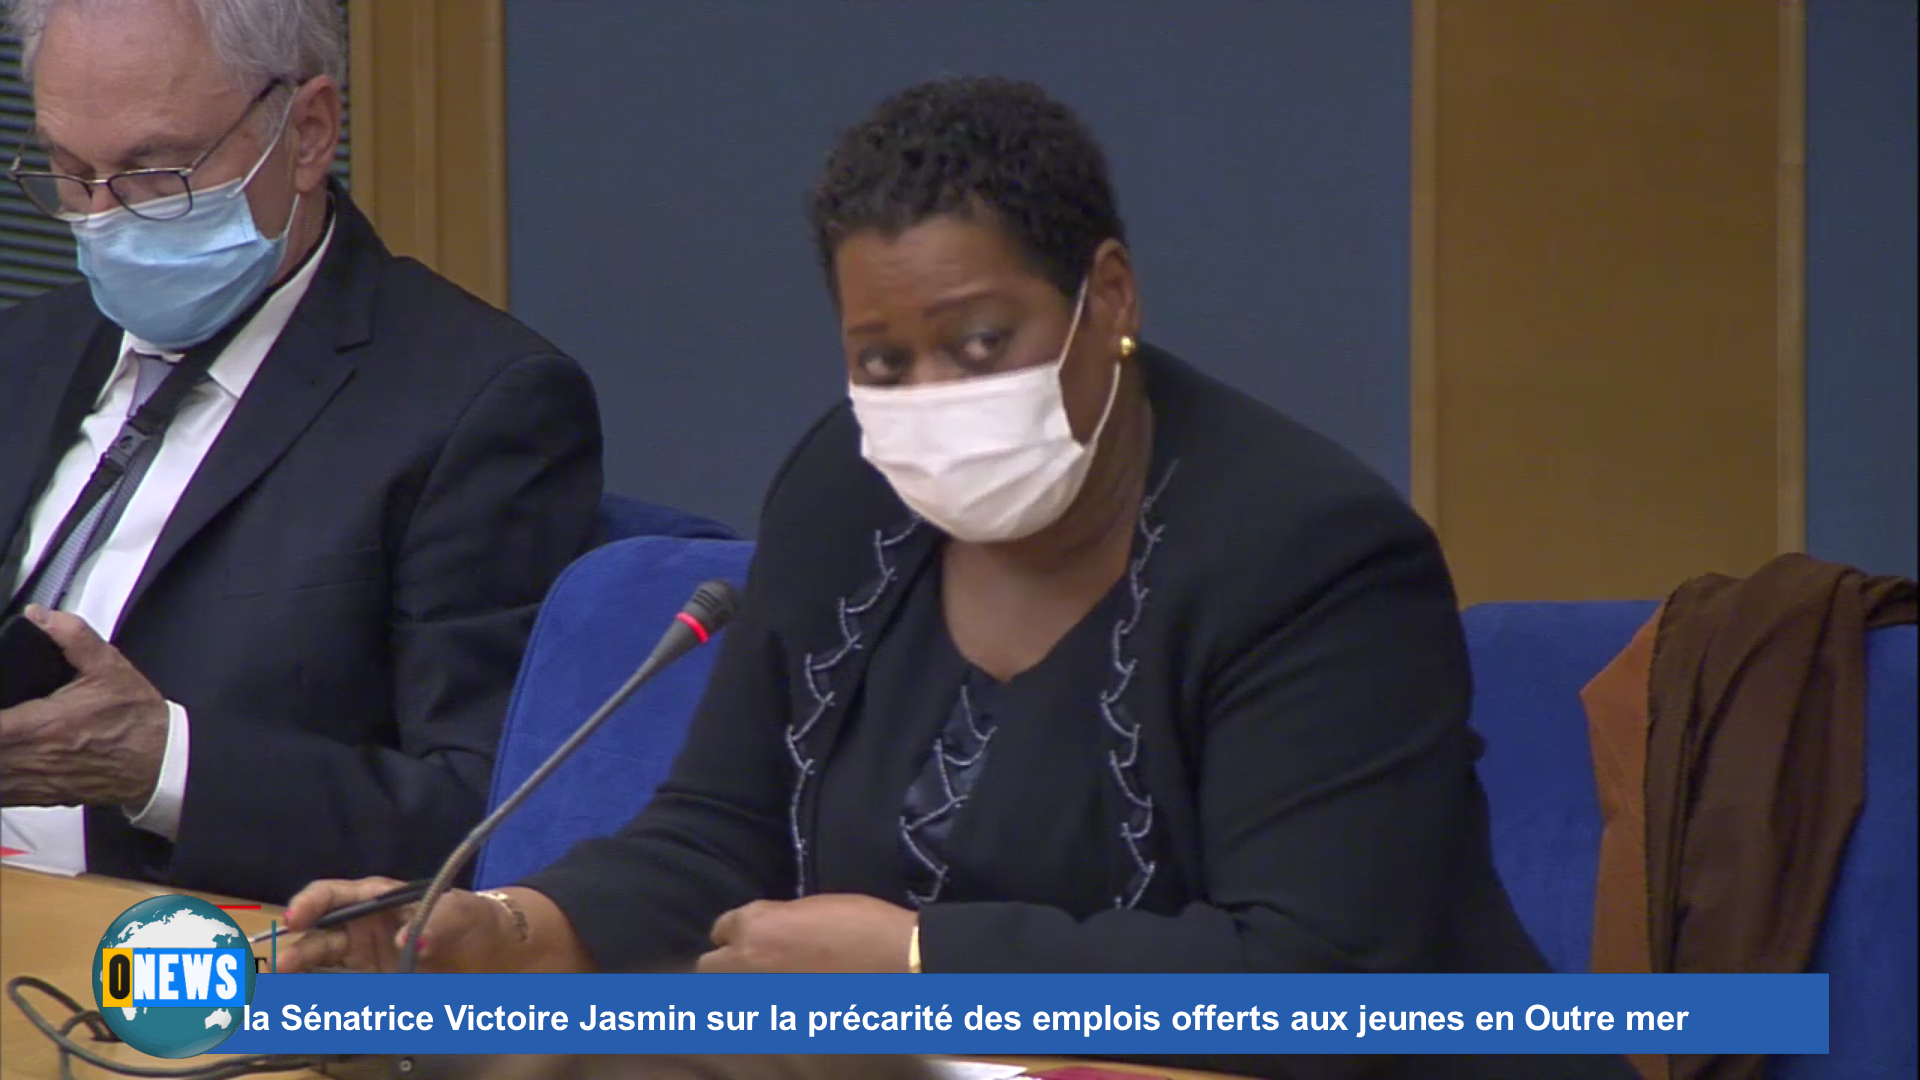 Onews Hexagone. Intervention de la Sénatrice Victoire Jasmin sur la précarité des emplois offerts aux jeunes en Outre mer